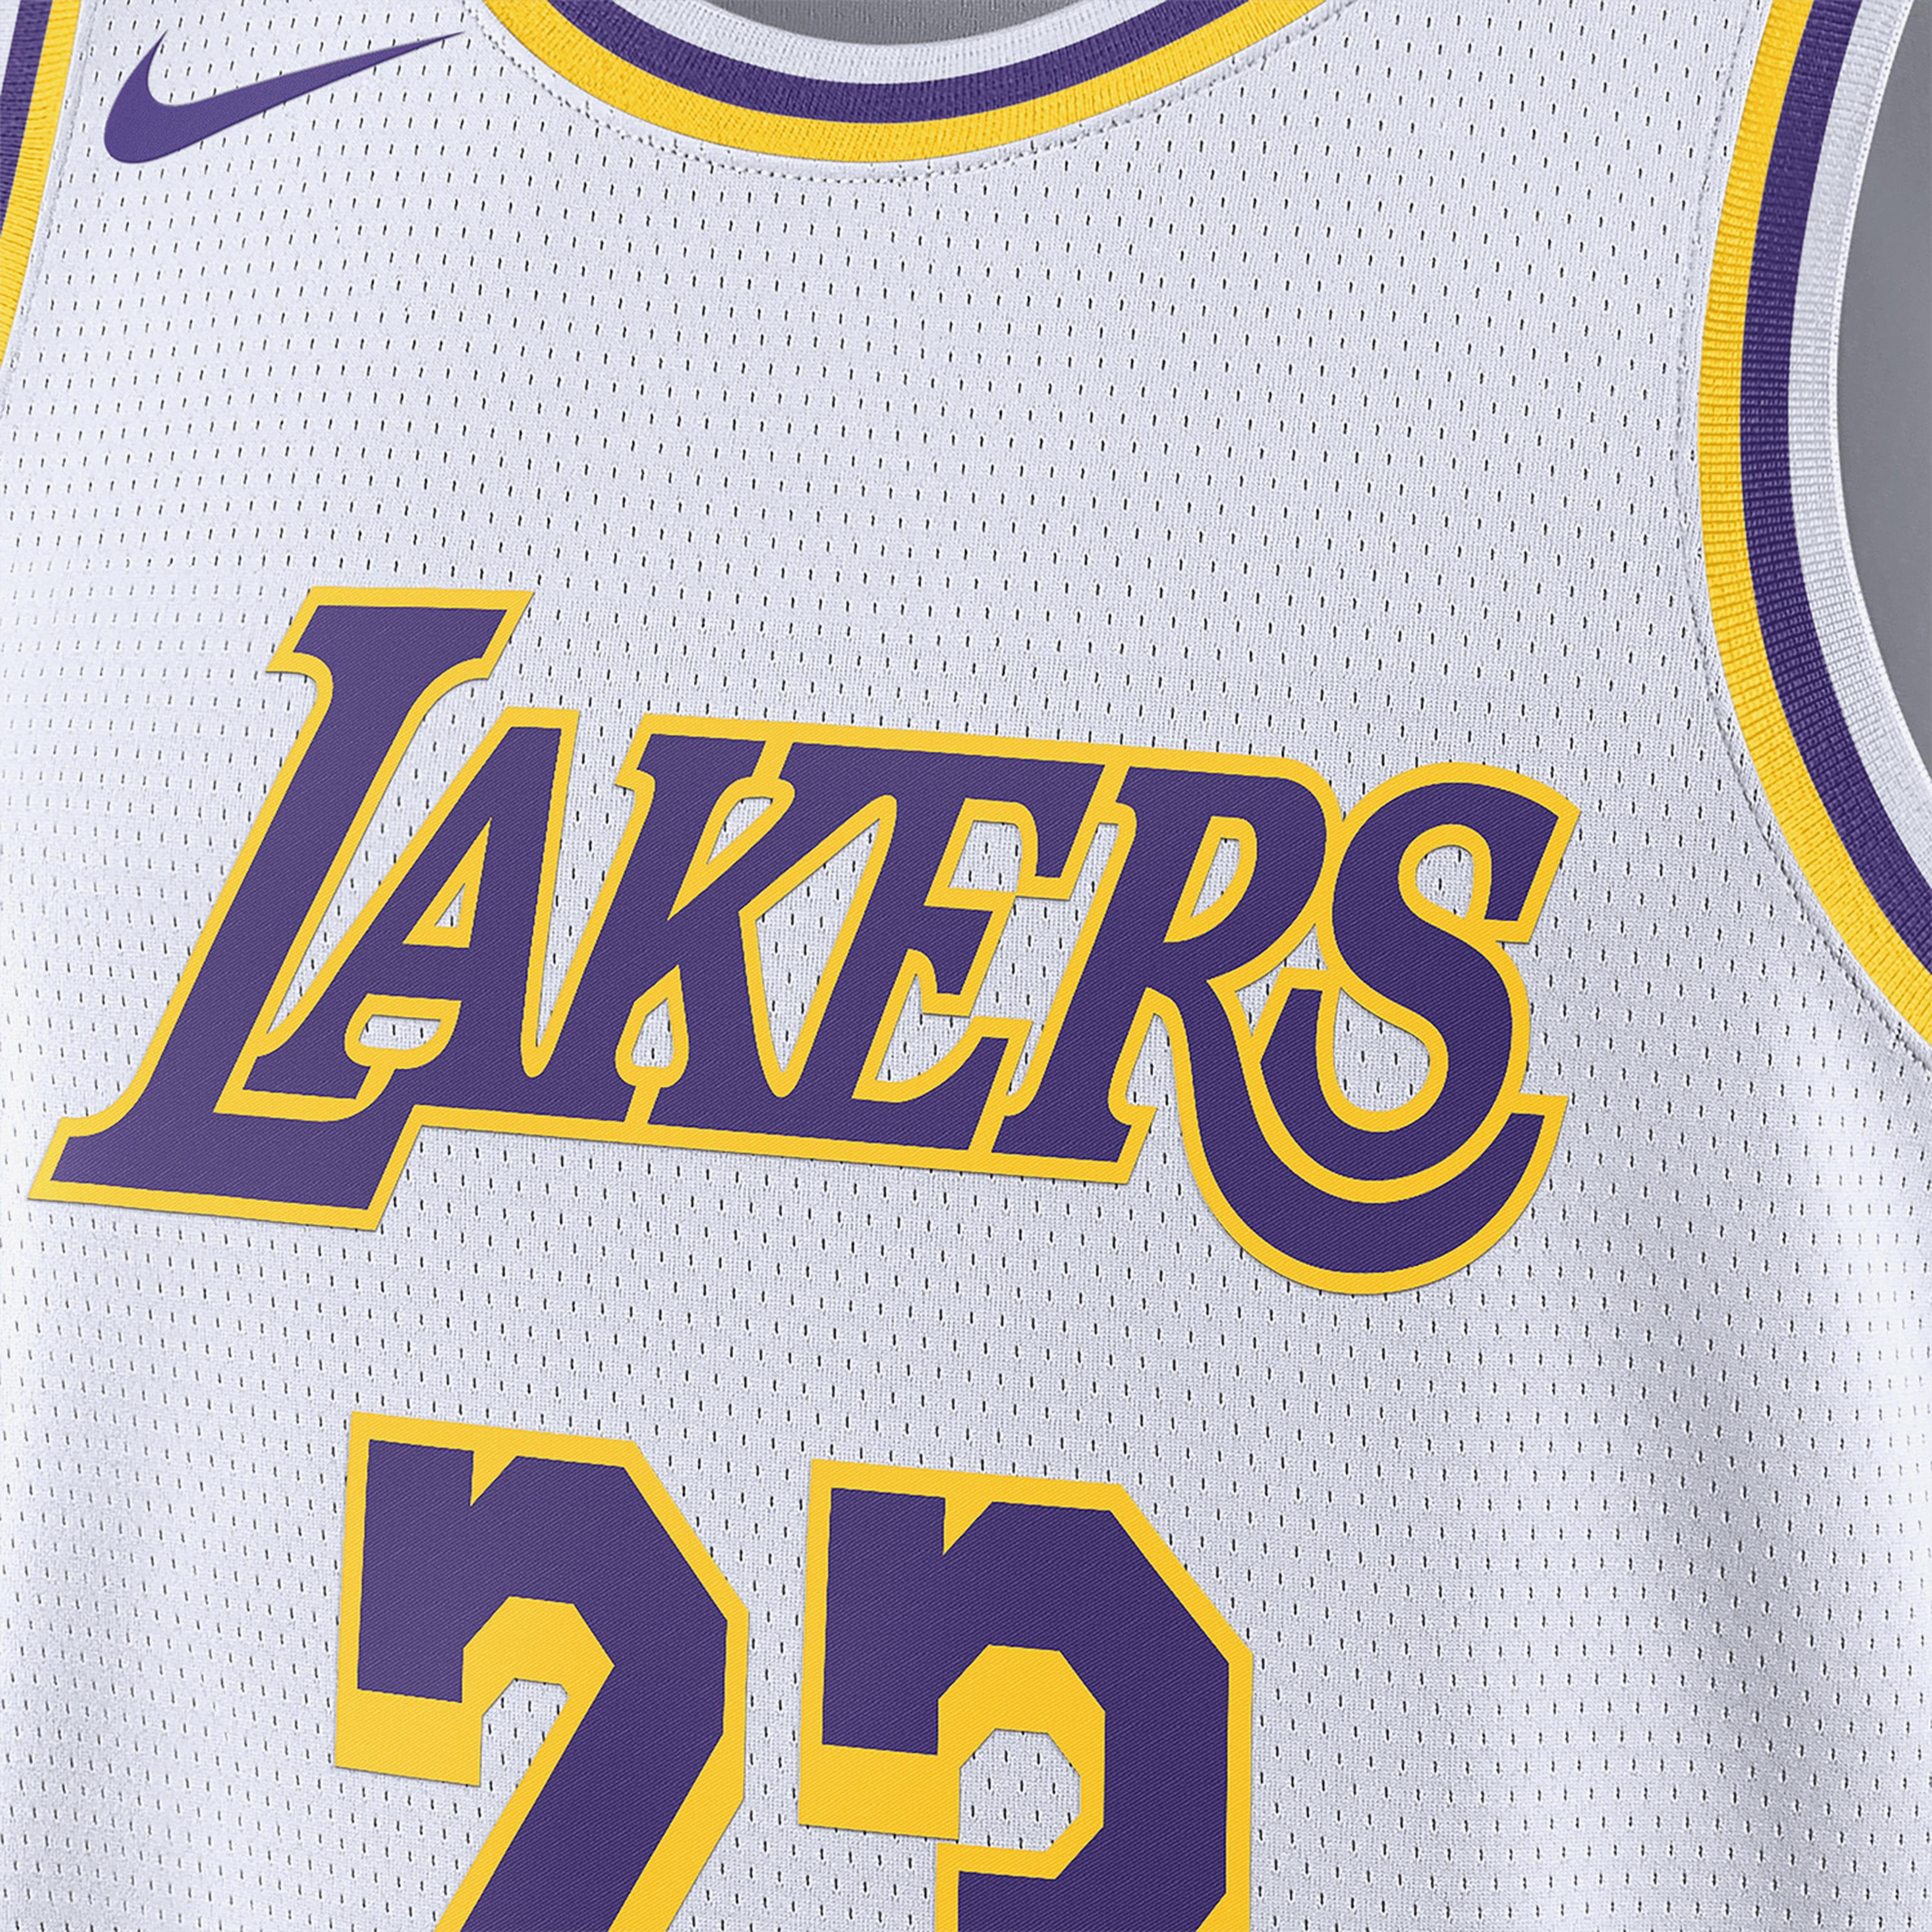 Nike Los Angeles Lakers NBA Erkek Beyaz Forma